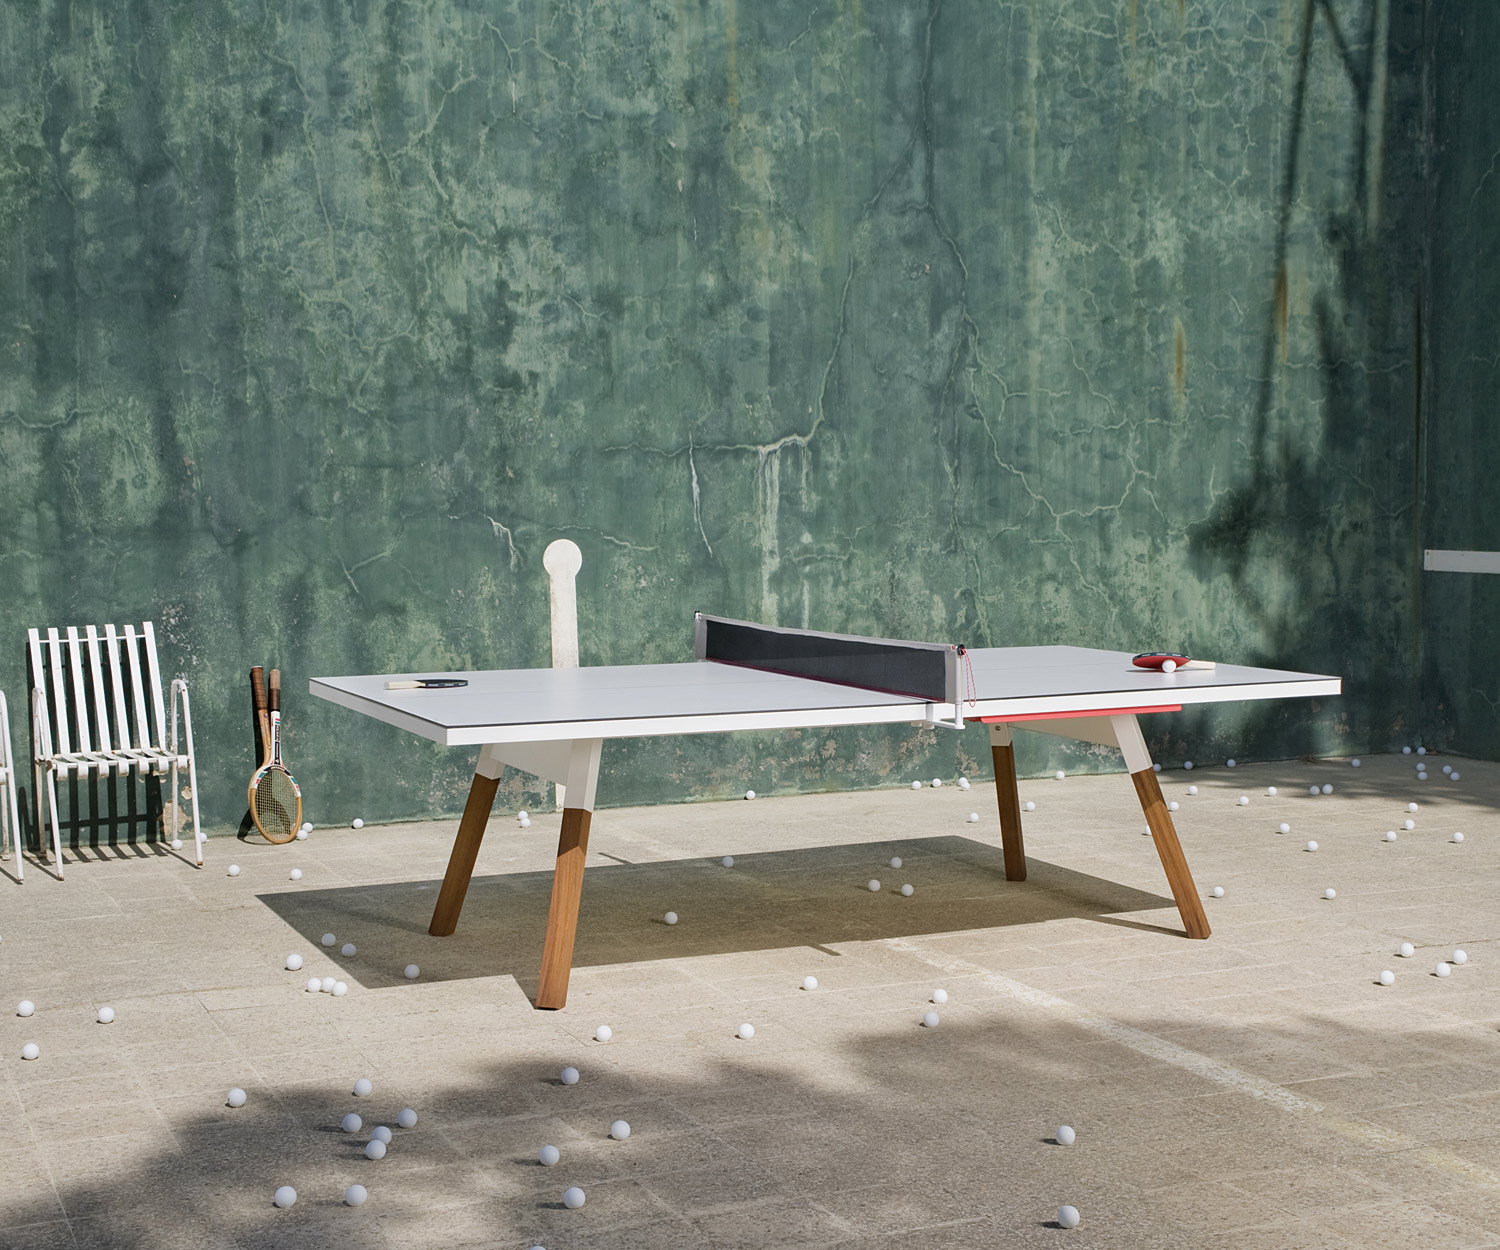 Table de ping-pong pour manger à l'extérieur après un match endiablé avec de nombreuses balles en celluloïd